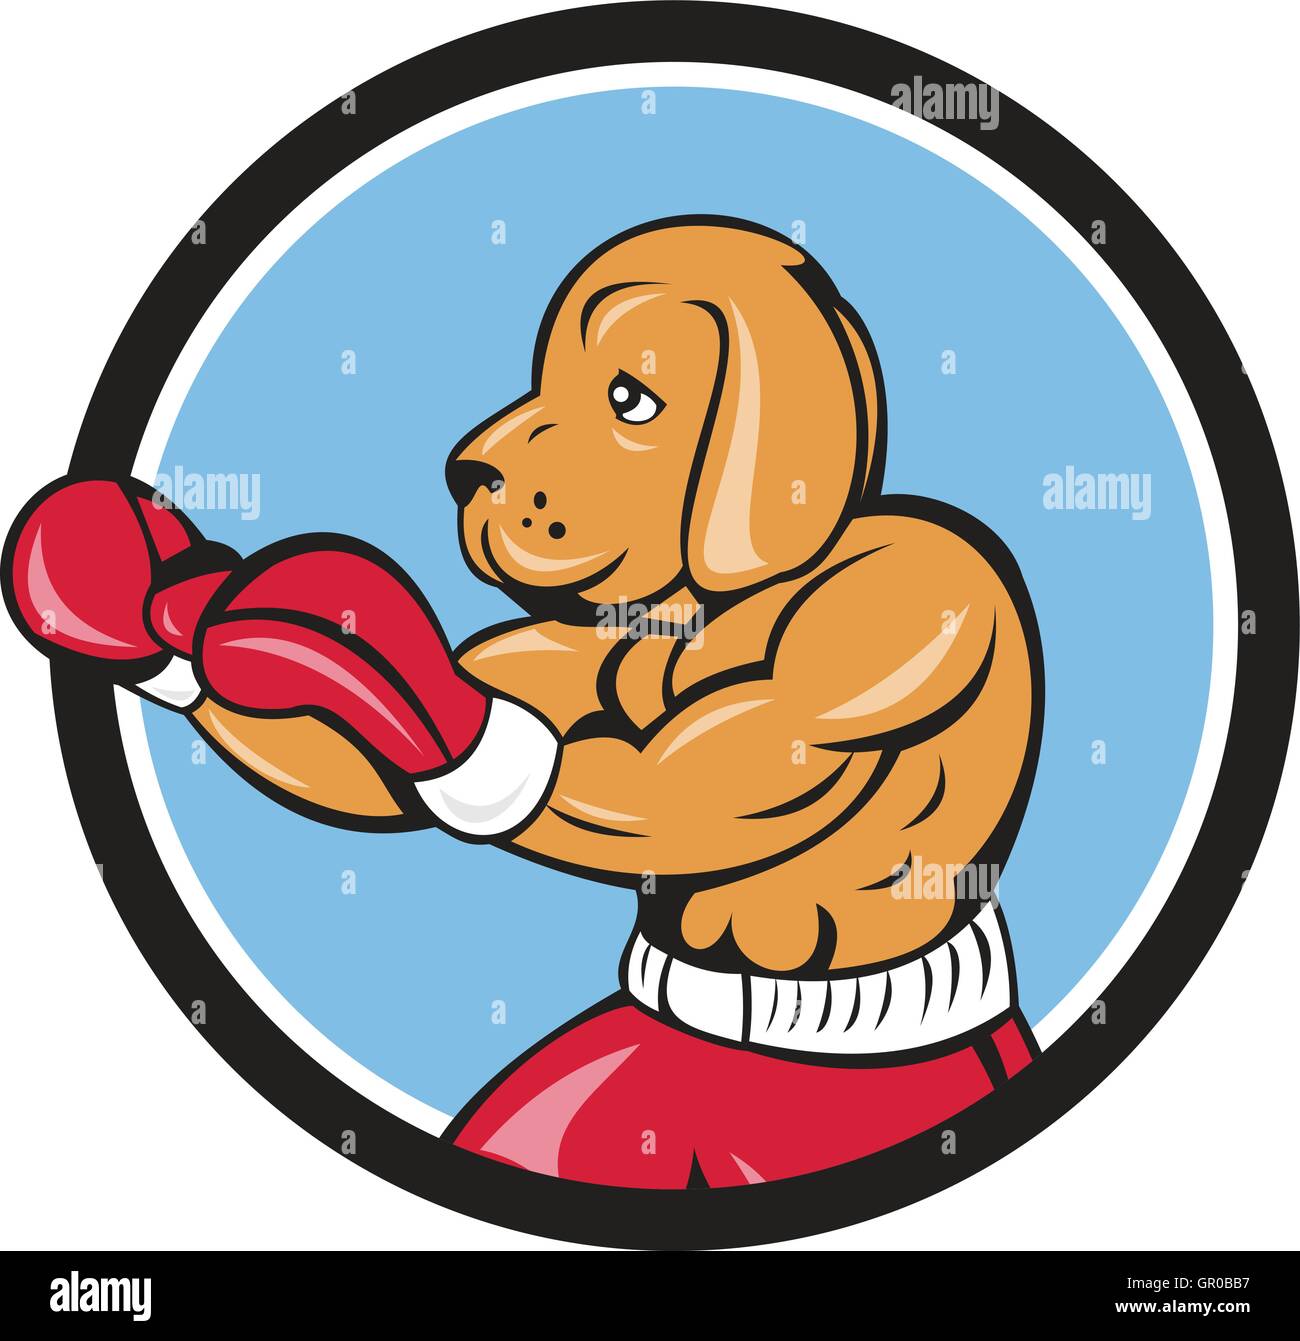 Abbildung von einem Hund Boxer in eine Kampfposition der Seitenansicht im inneren Kreis auf isolierte Hintergrund getan im Cartoon-Stil festgelegt. Stock Vektor